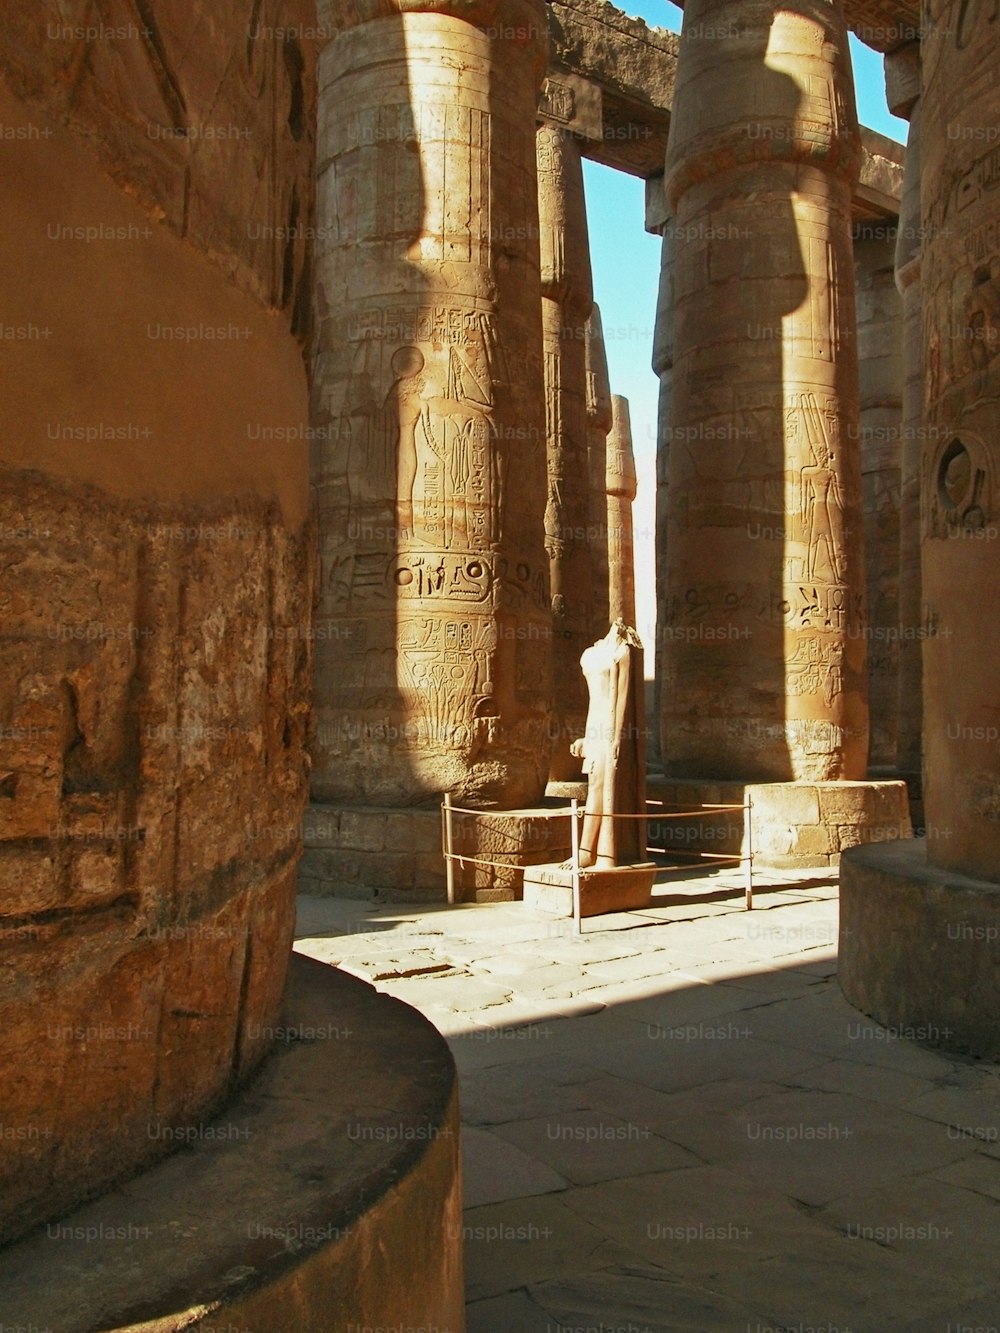 Una estatua de un hombre parado frente a unos pilares